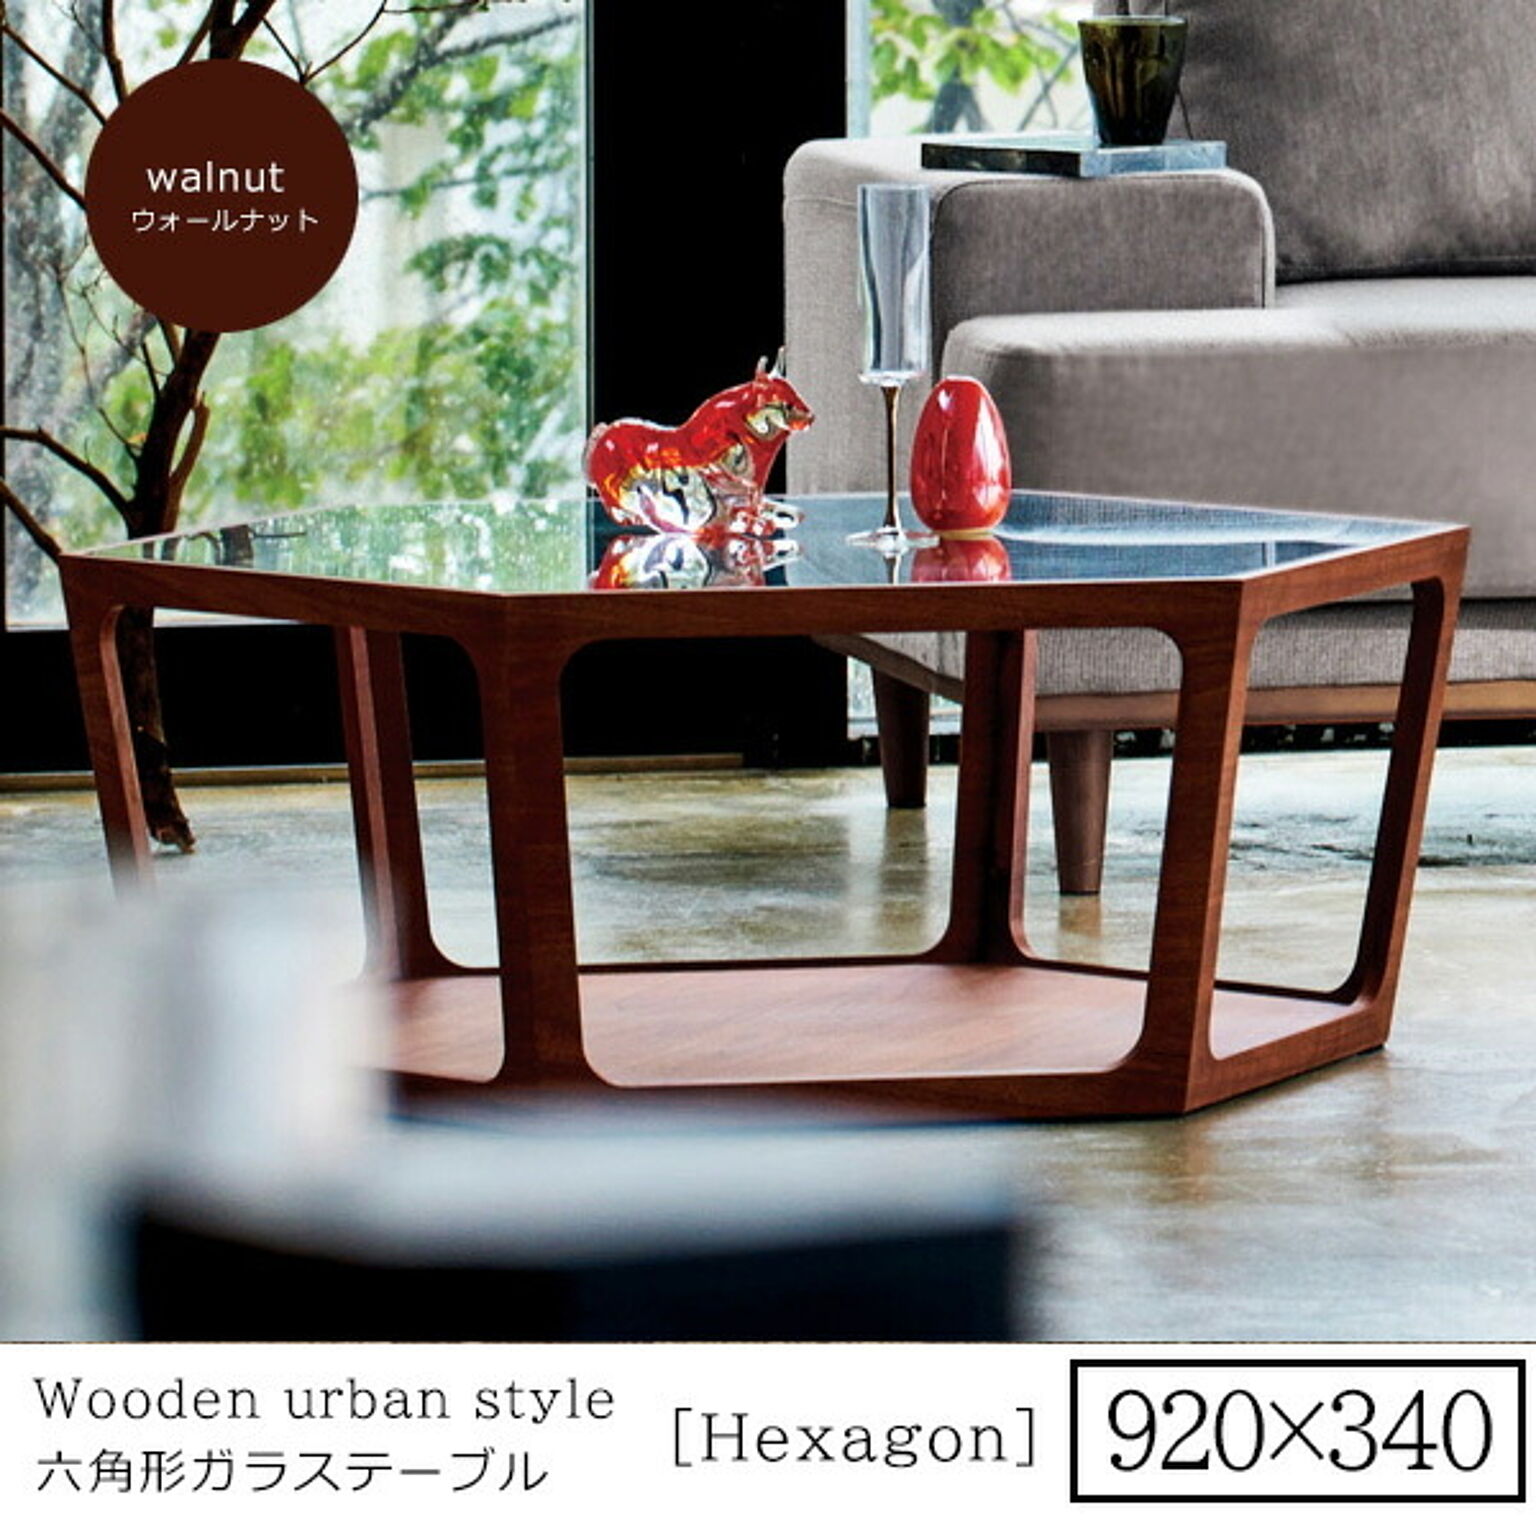 強化ガラステーブル Hexagon ウォールナット コーヒーテーブル 920x340 アーバン